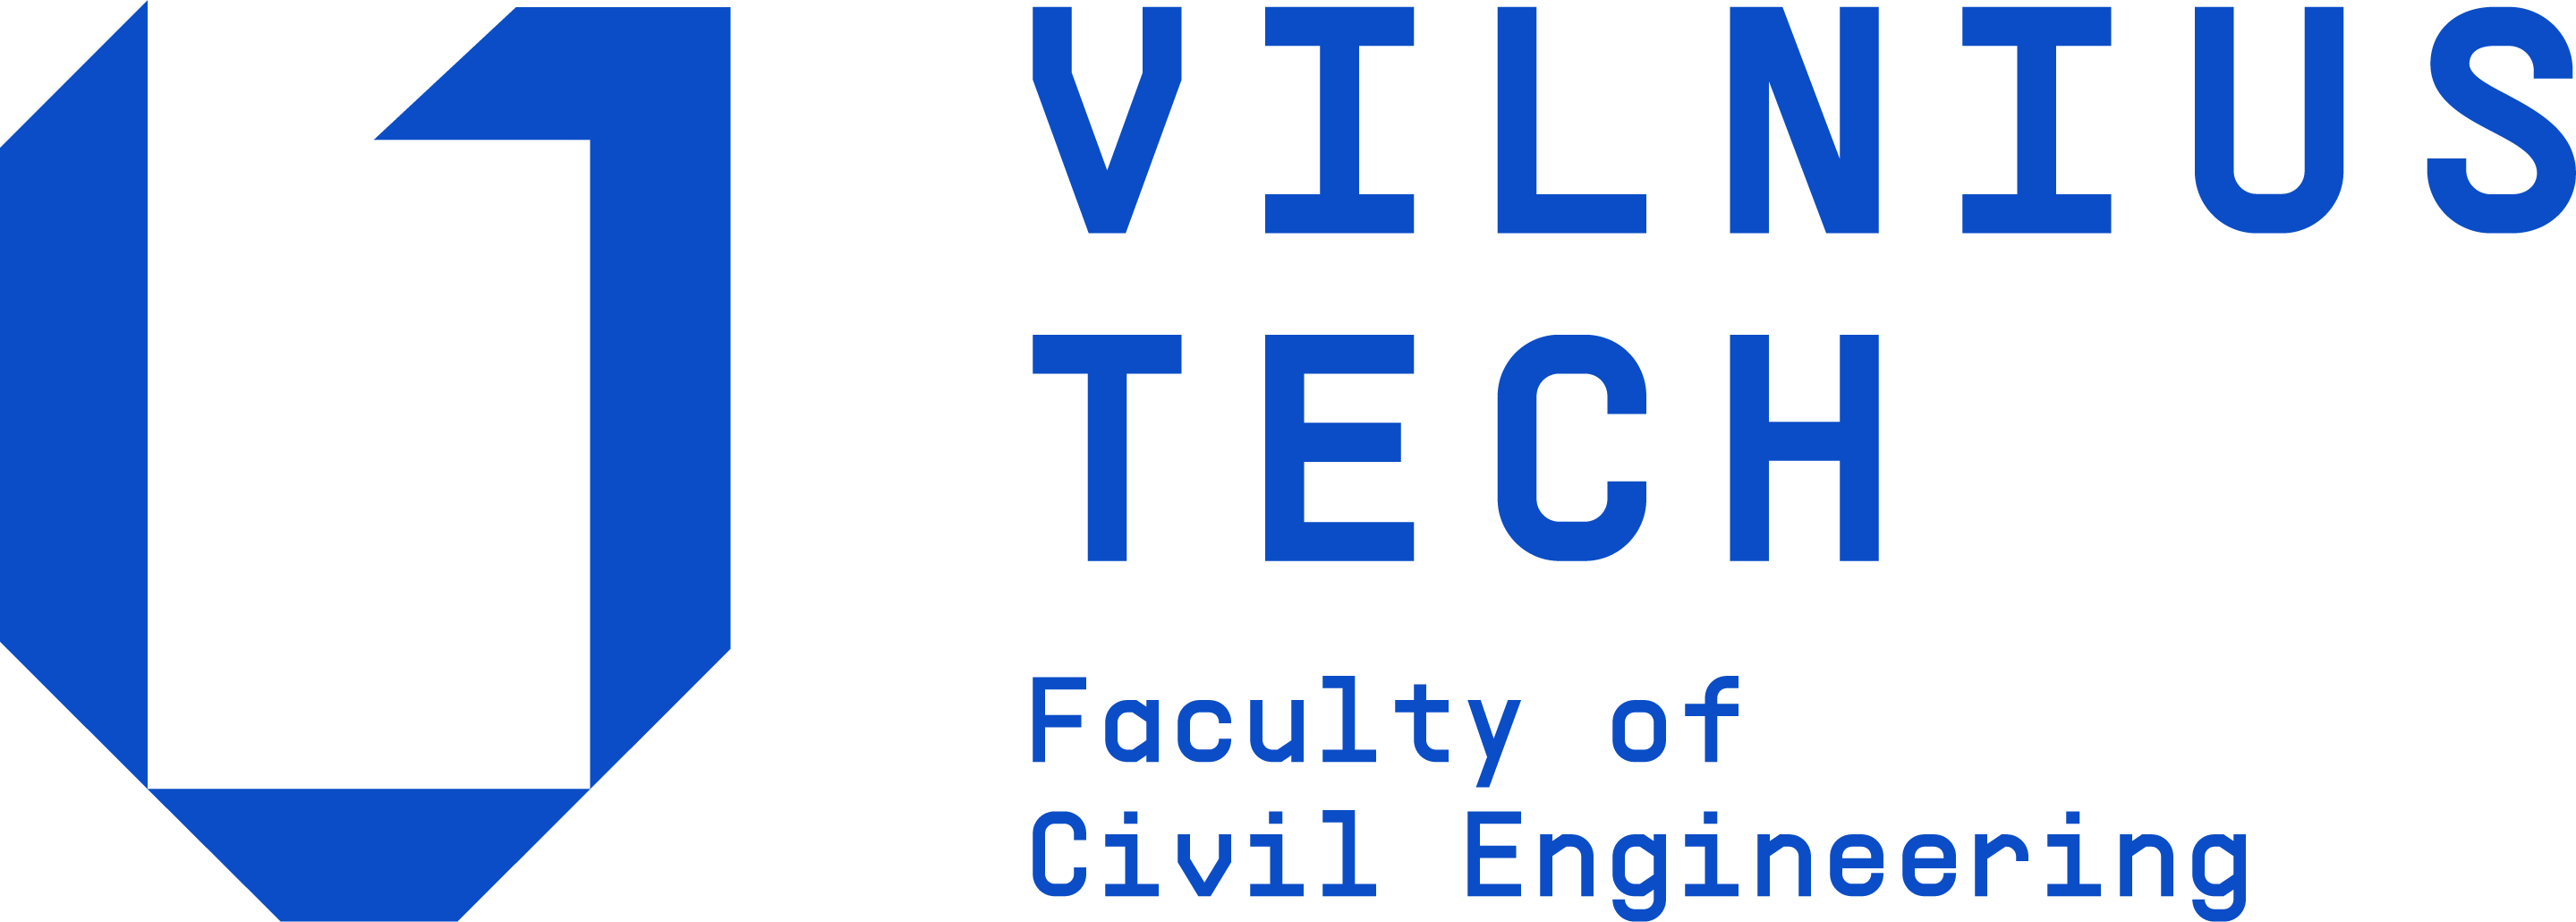 Vilnius Logo